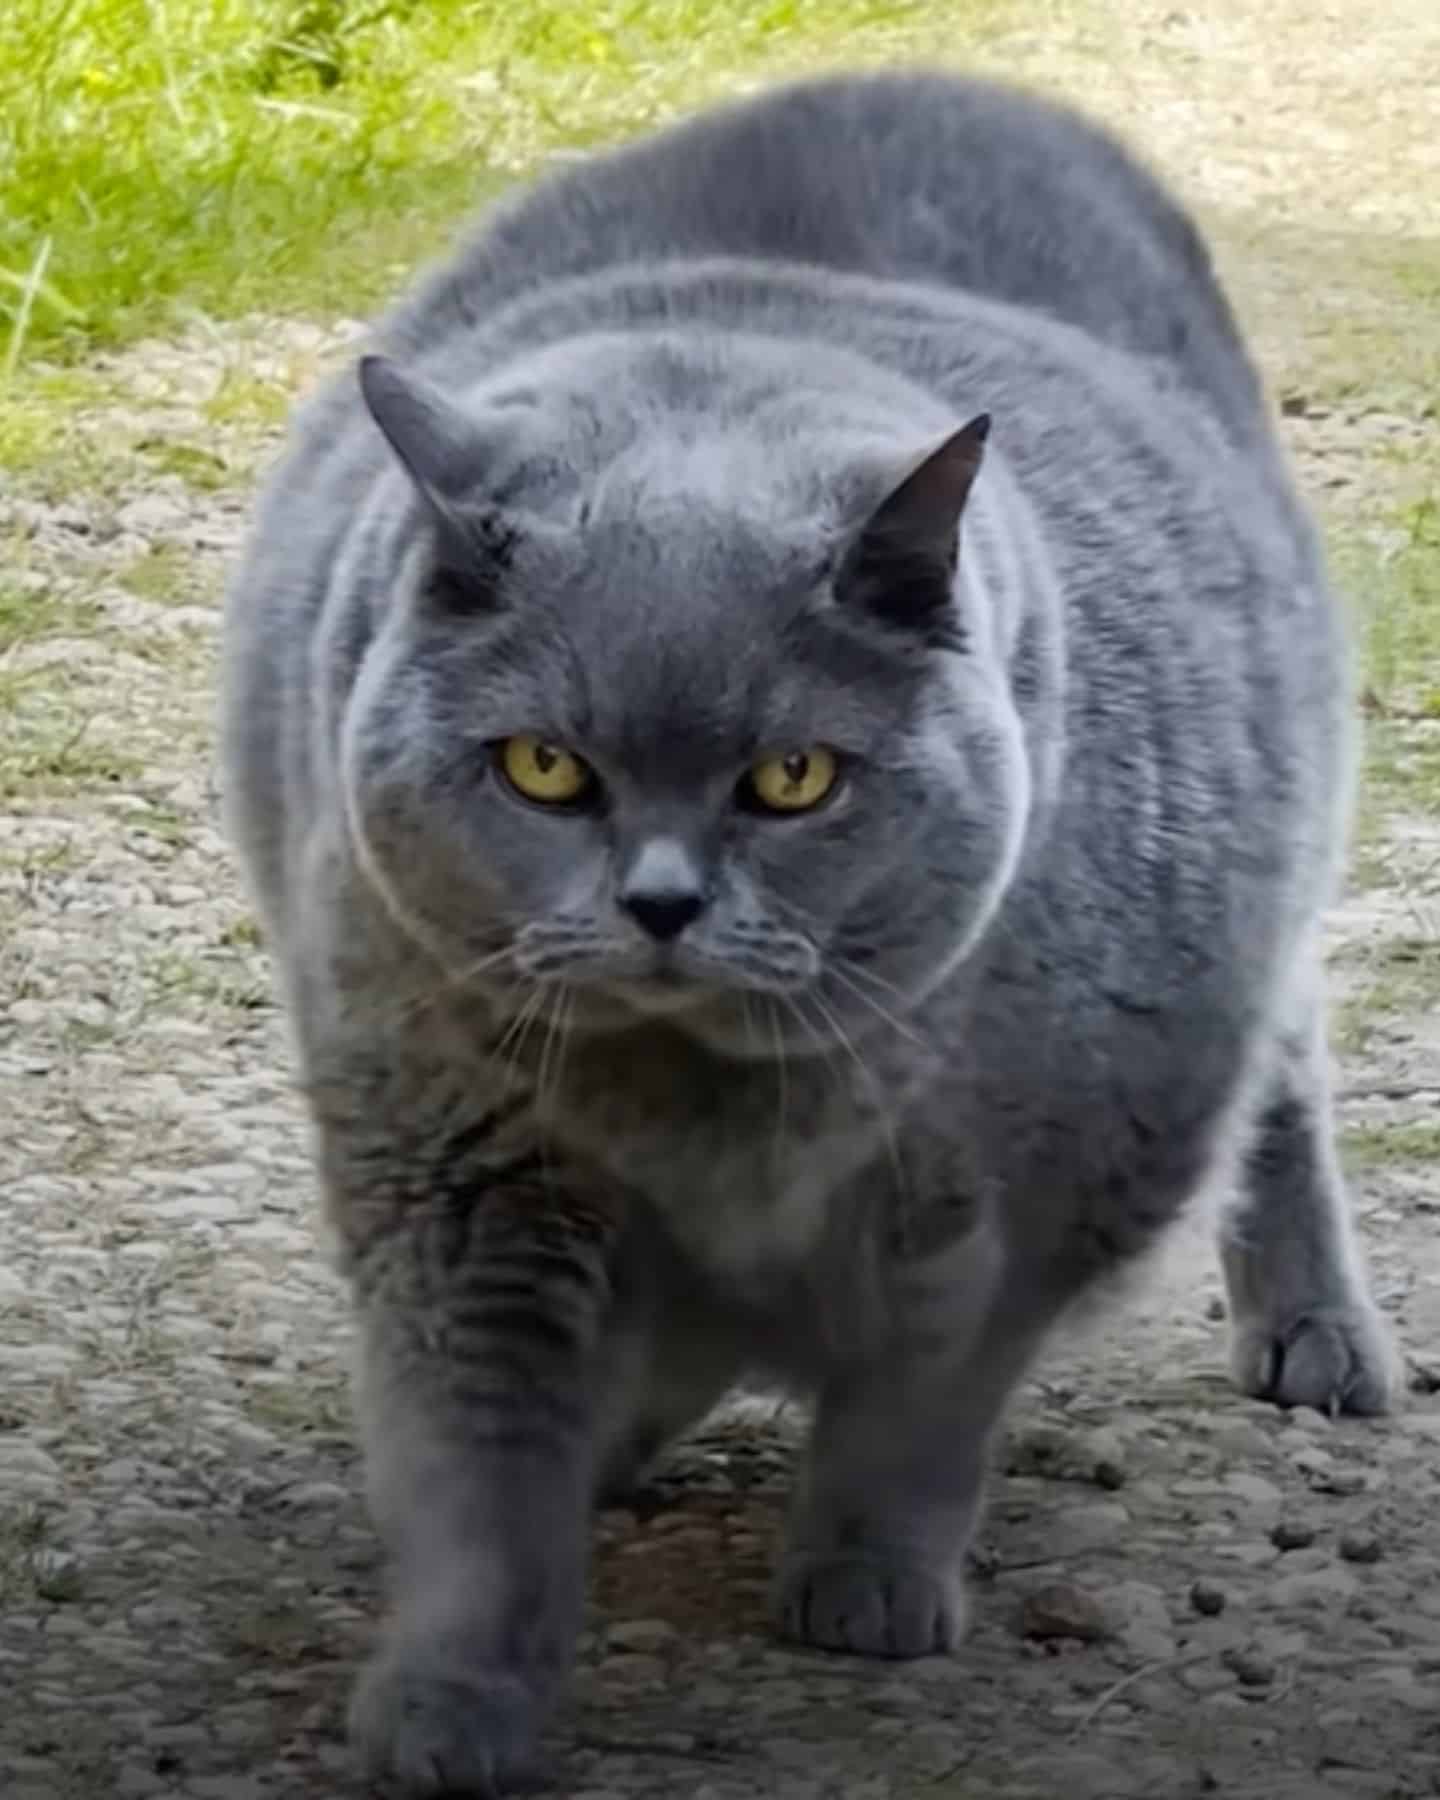 photo of overweight senior cat walking